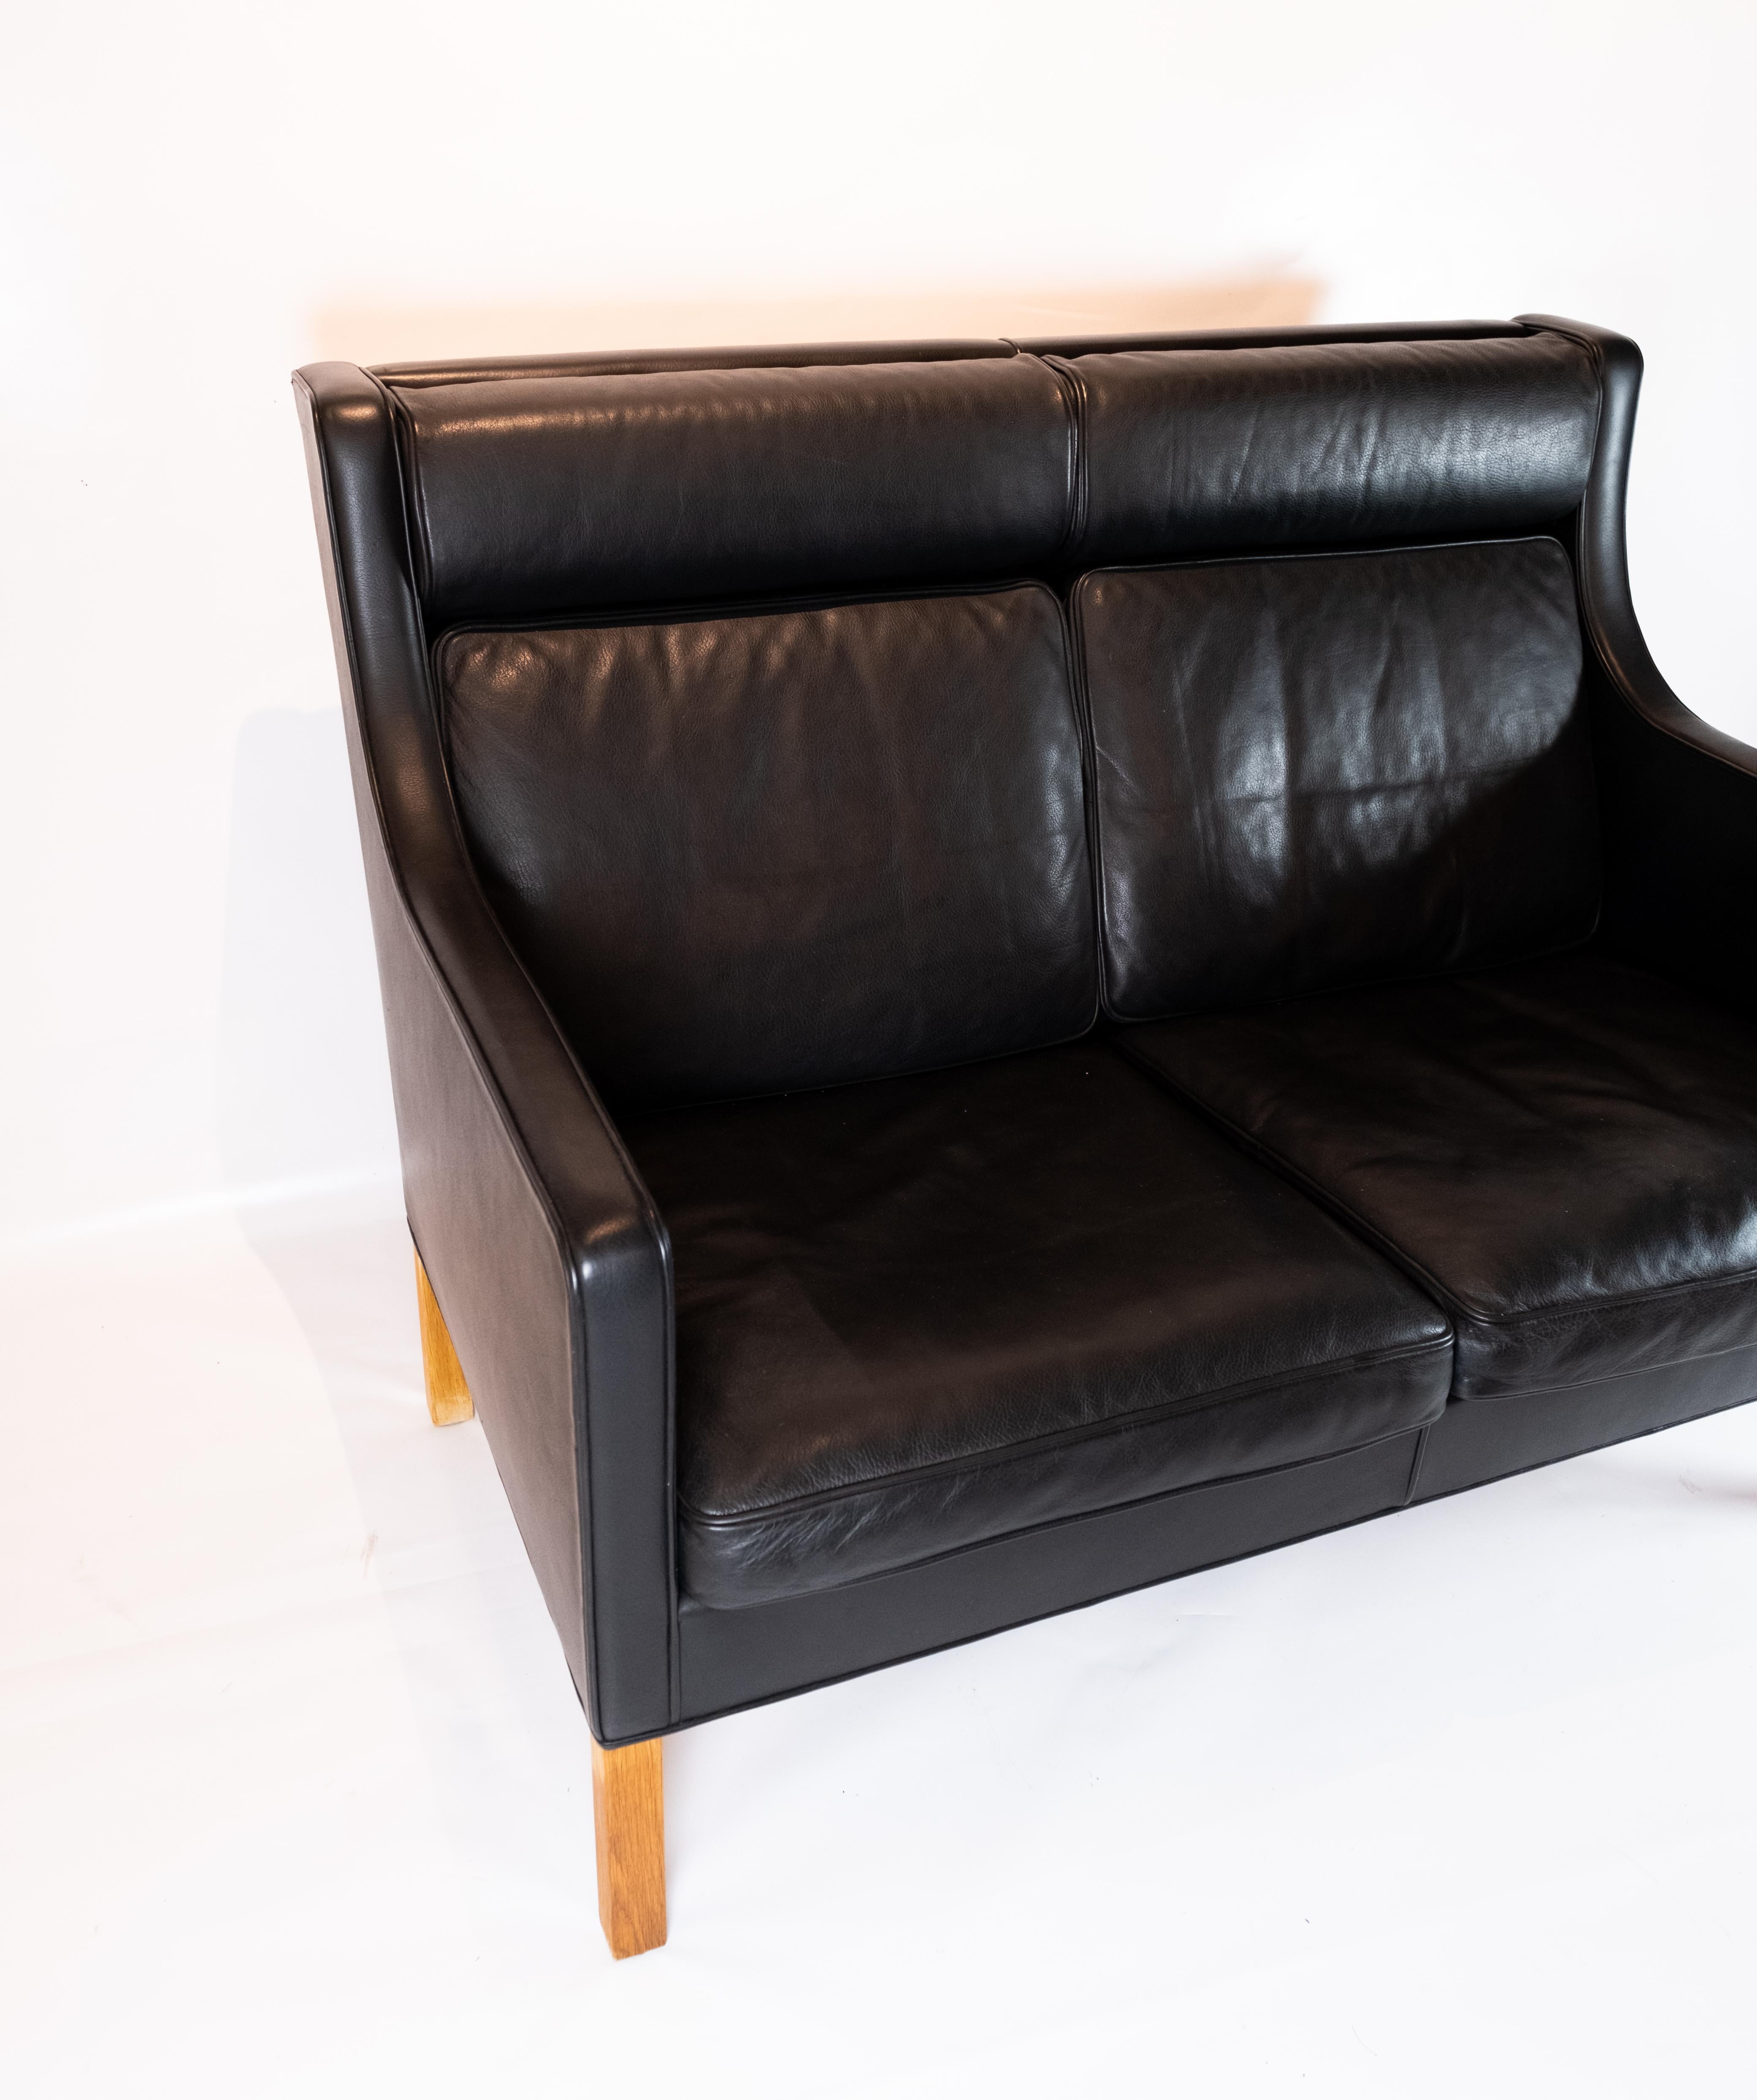 Le canapé 2 places Kupe, modèle 2192, est un bel exemple de design danois des années 1970, créé par le célèbre designer Børge Mogensen en collaboration avec Fredericia Furniture.

Ce canapé dégage une élégance simple et intemporelle avec son